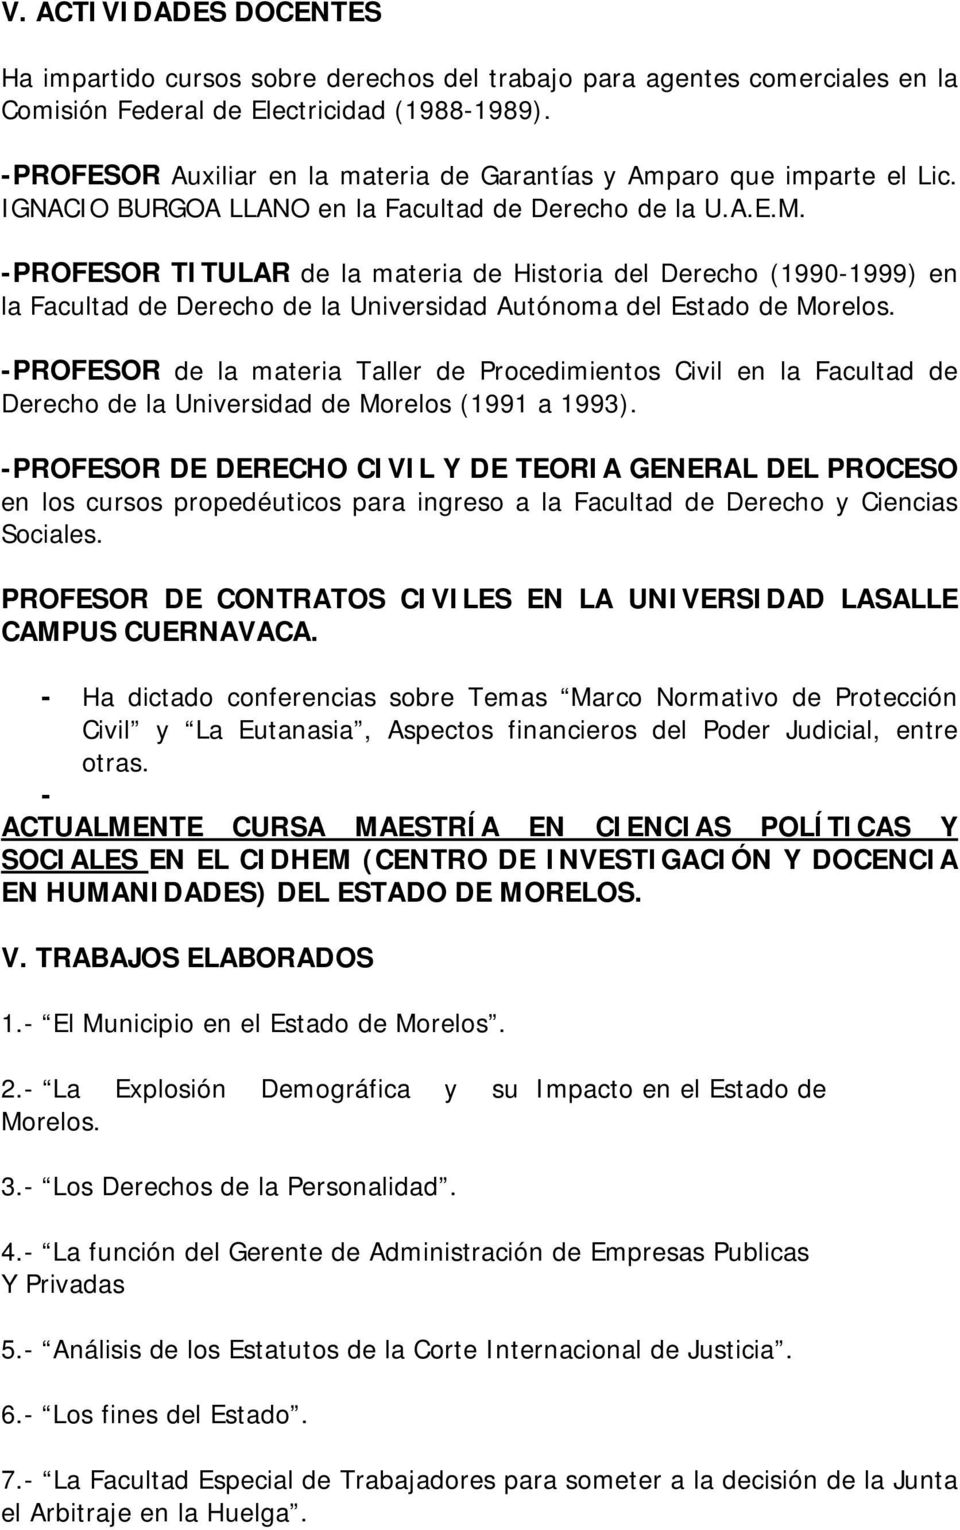 -PROFESOR TITULAR de la materia de Historia del Derecho (1990-1999) en la Facultad de Derecho de la Universidad Autónoma del Estado de Morelos.